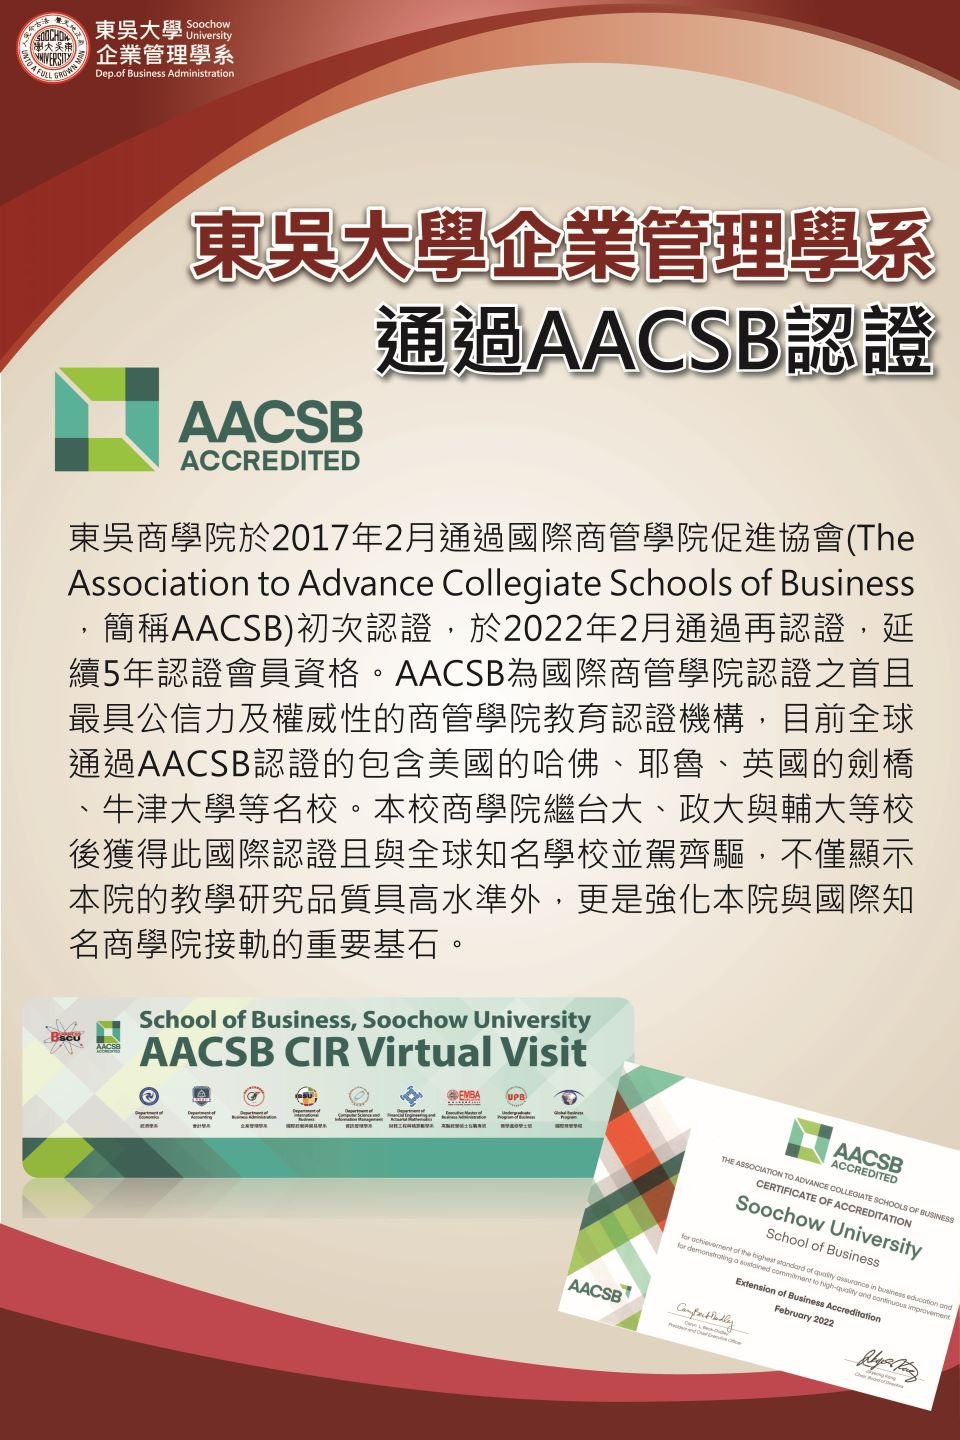 東吳大學商學院暨企業管理學系2022年通過AACSB再認證